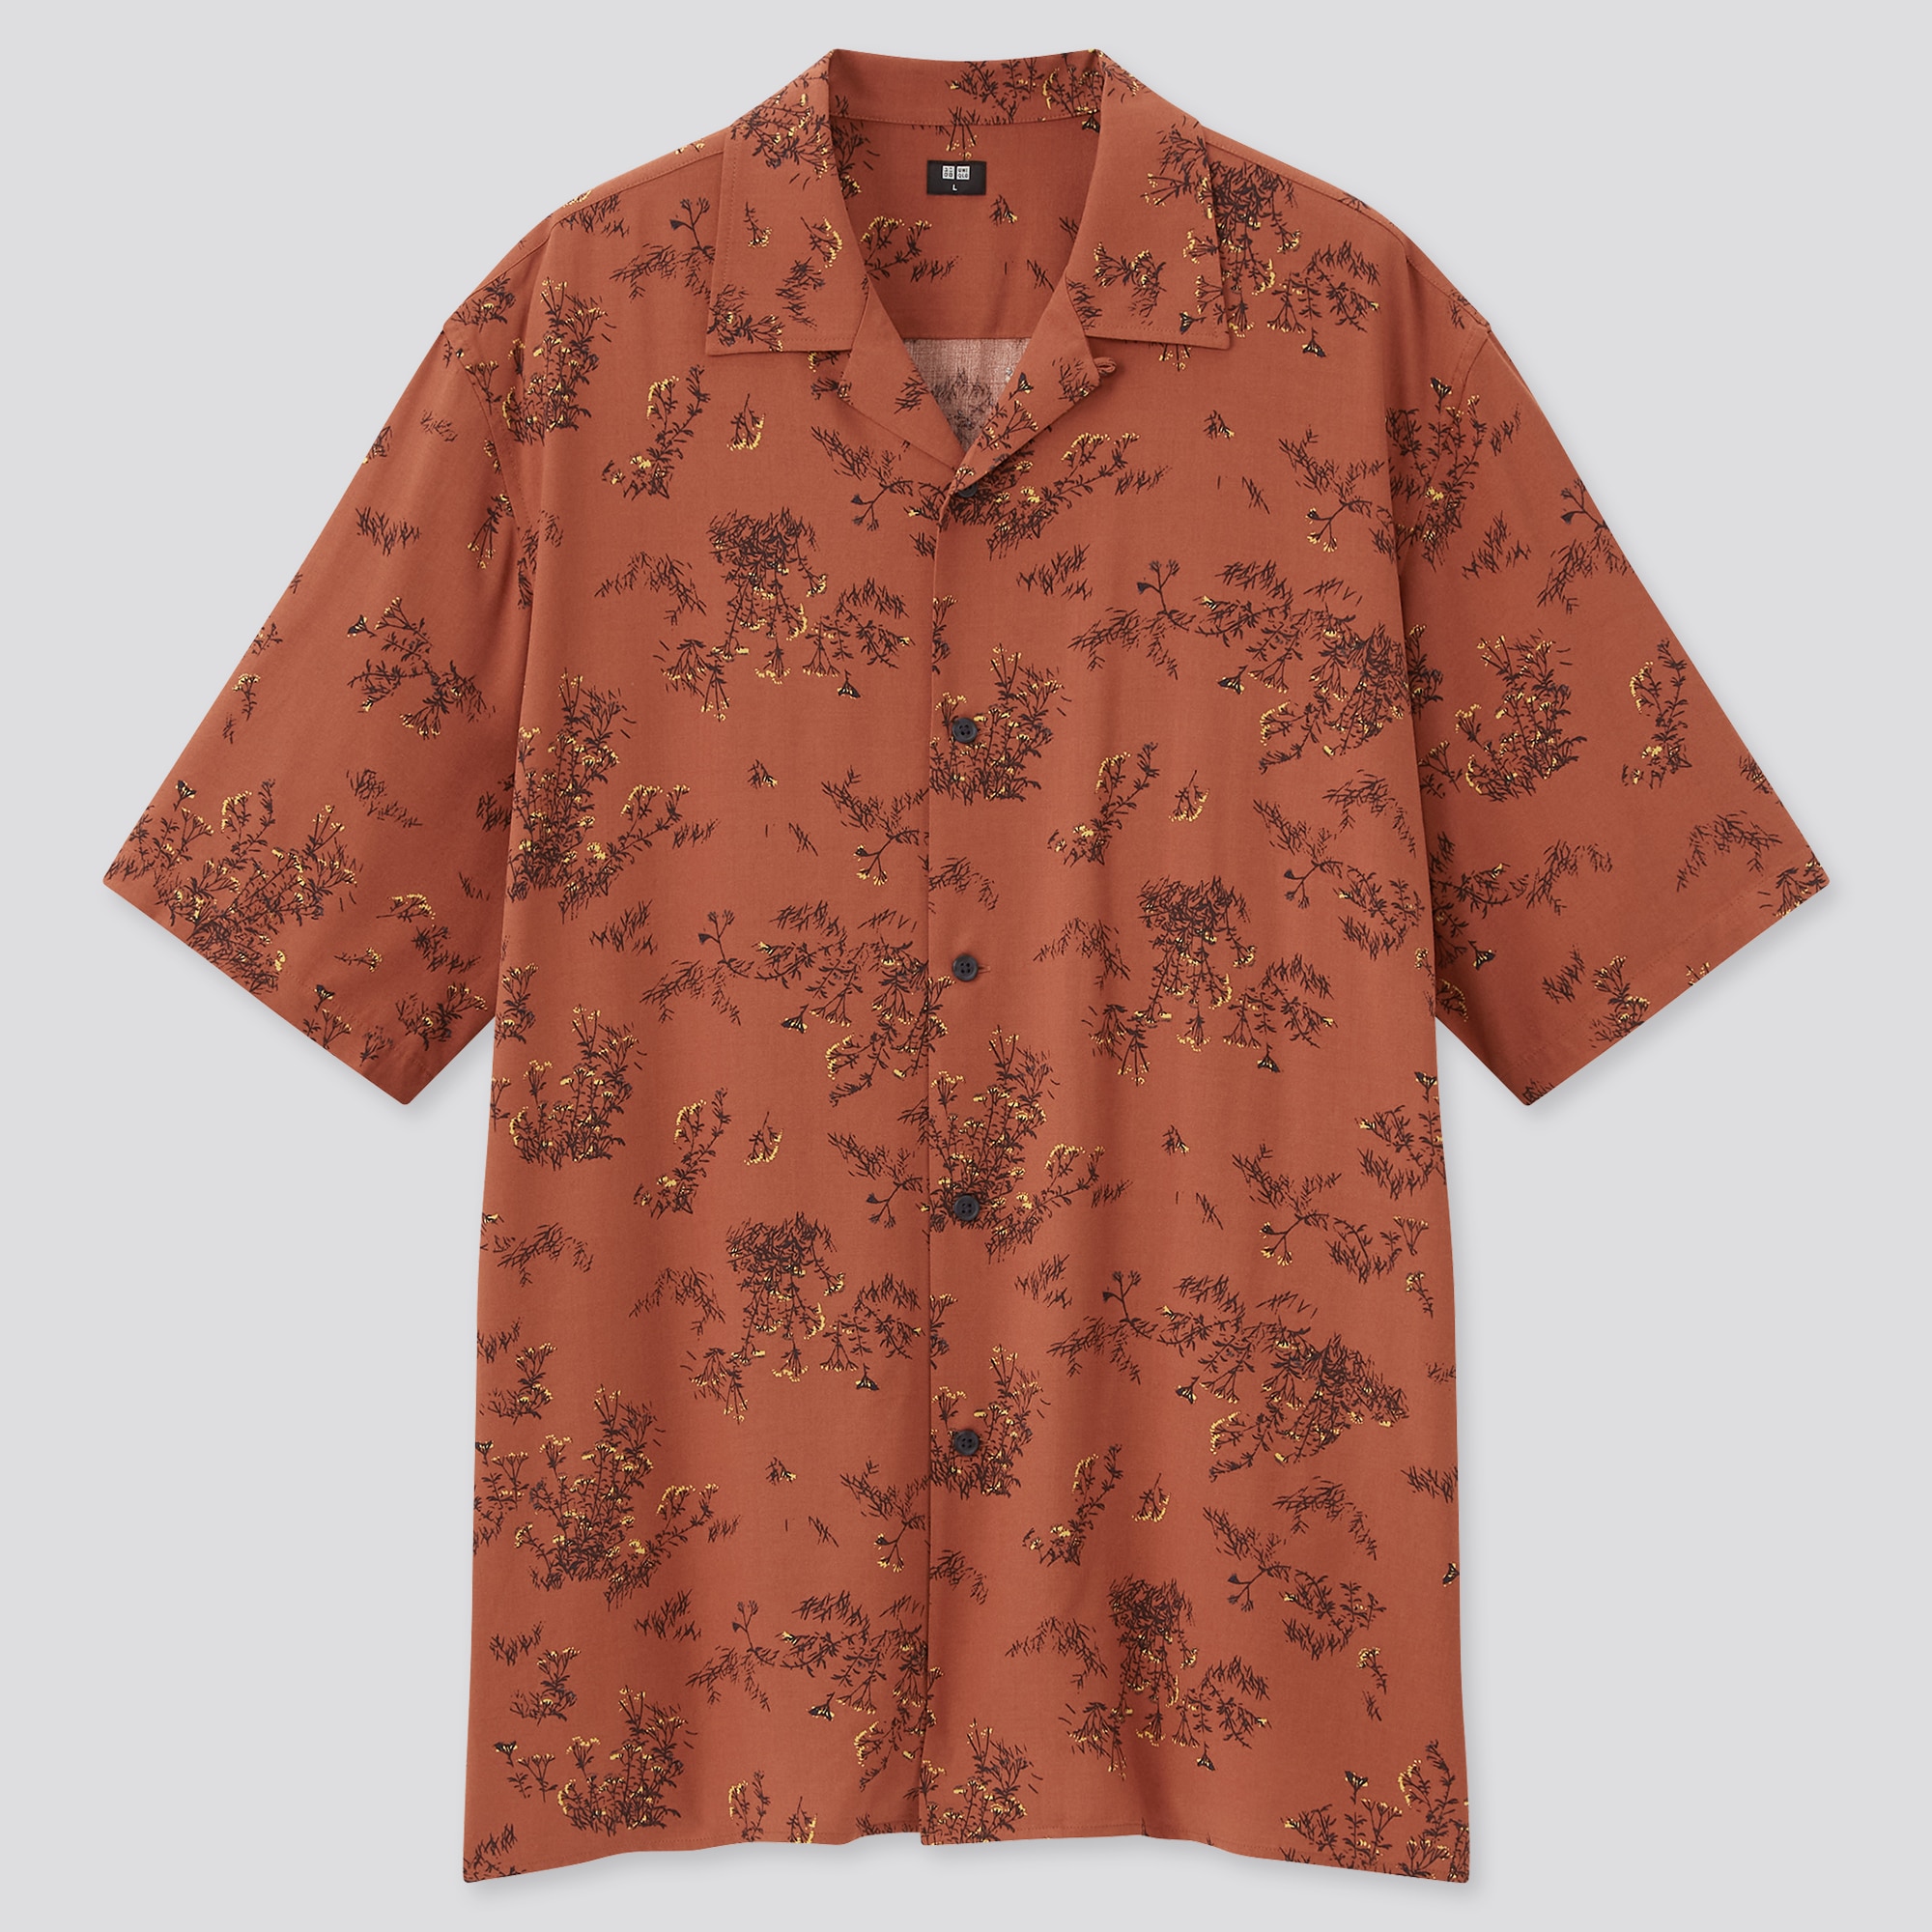 Printed Open Collar Short-Sleeve Shirt (Flower)